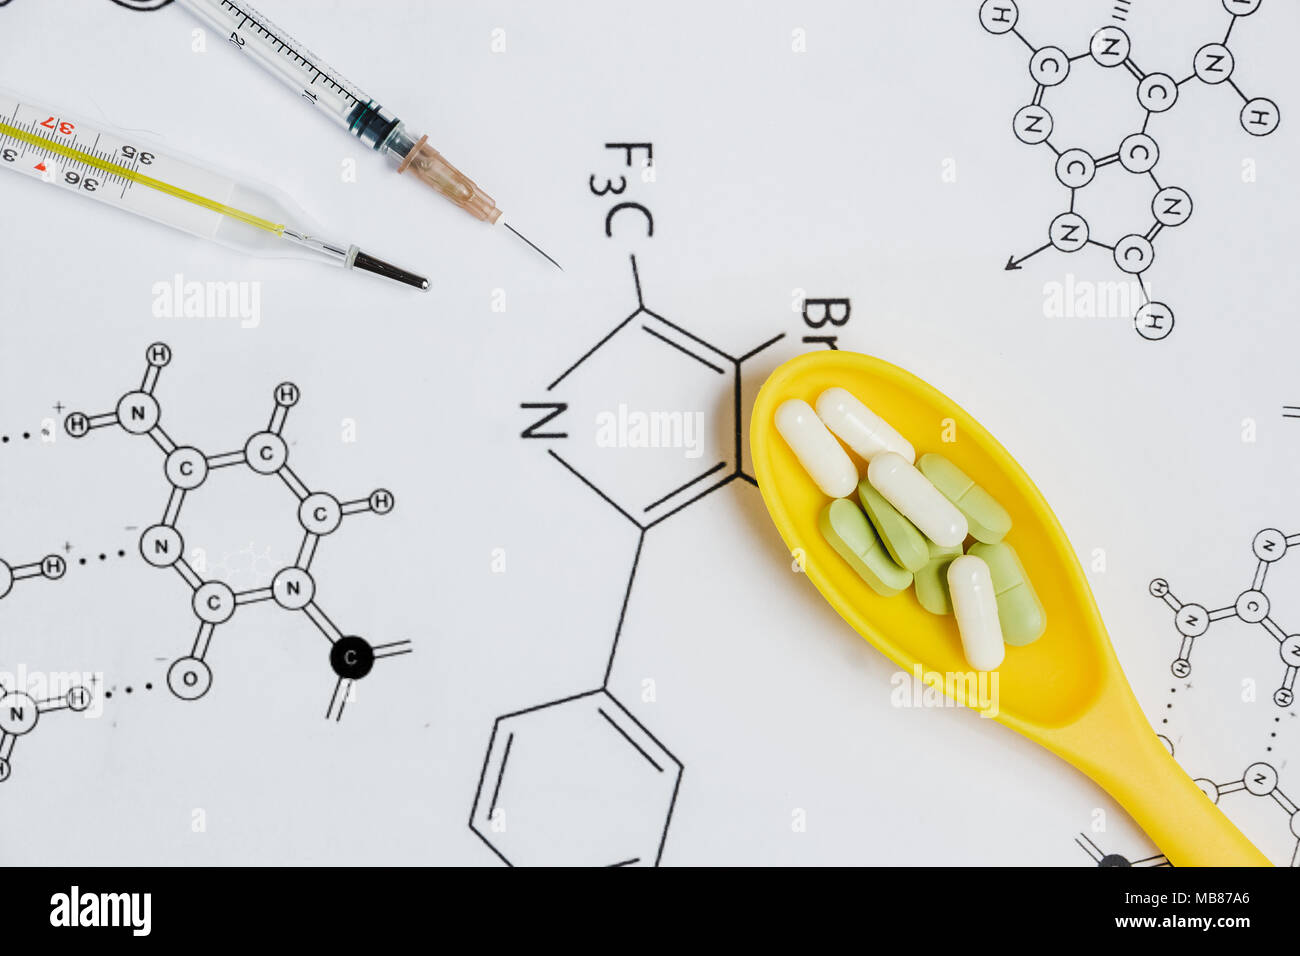 Assortiment de comprimés et gélules en jaune une cuillère, seringue, thermomètre sur fond blanc avec des formules chimiques. Banque D'Images